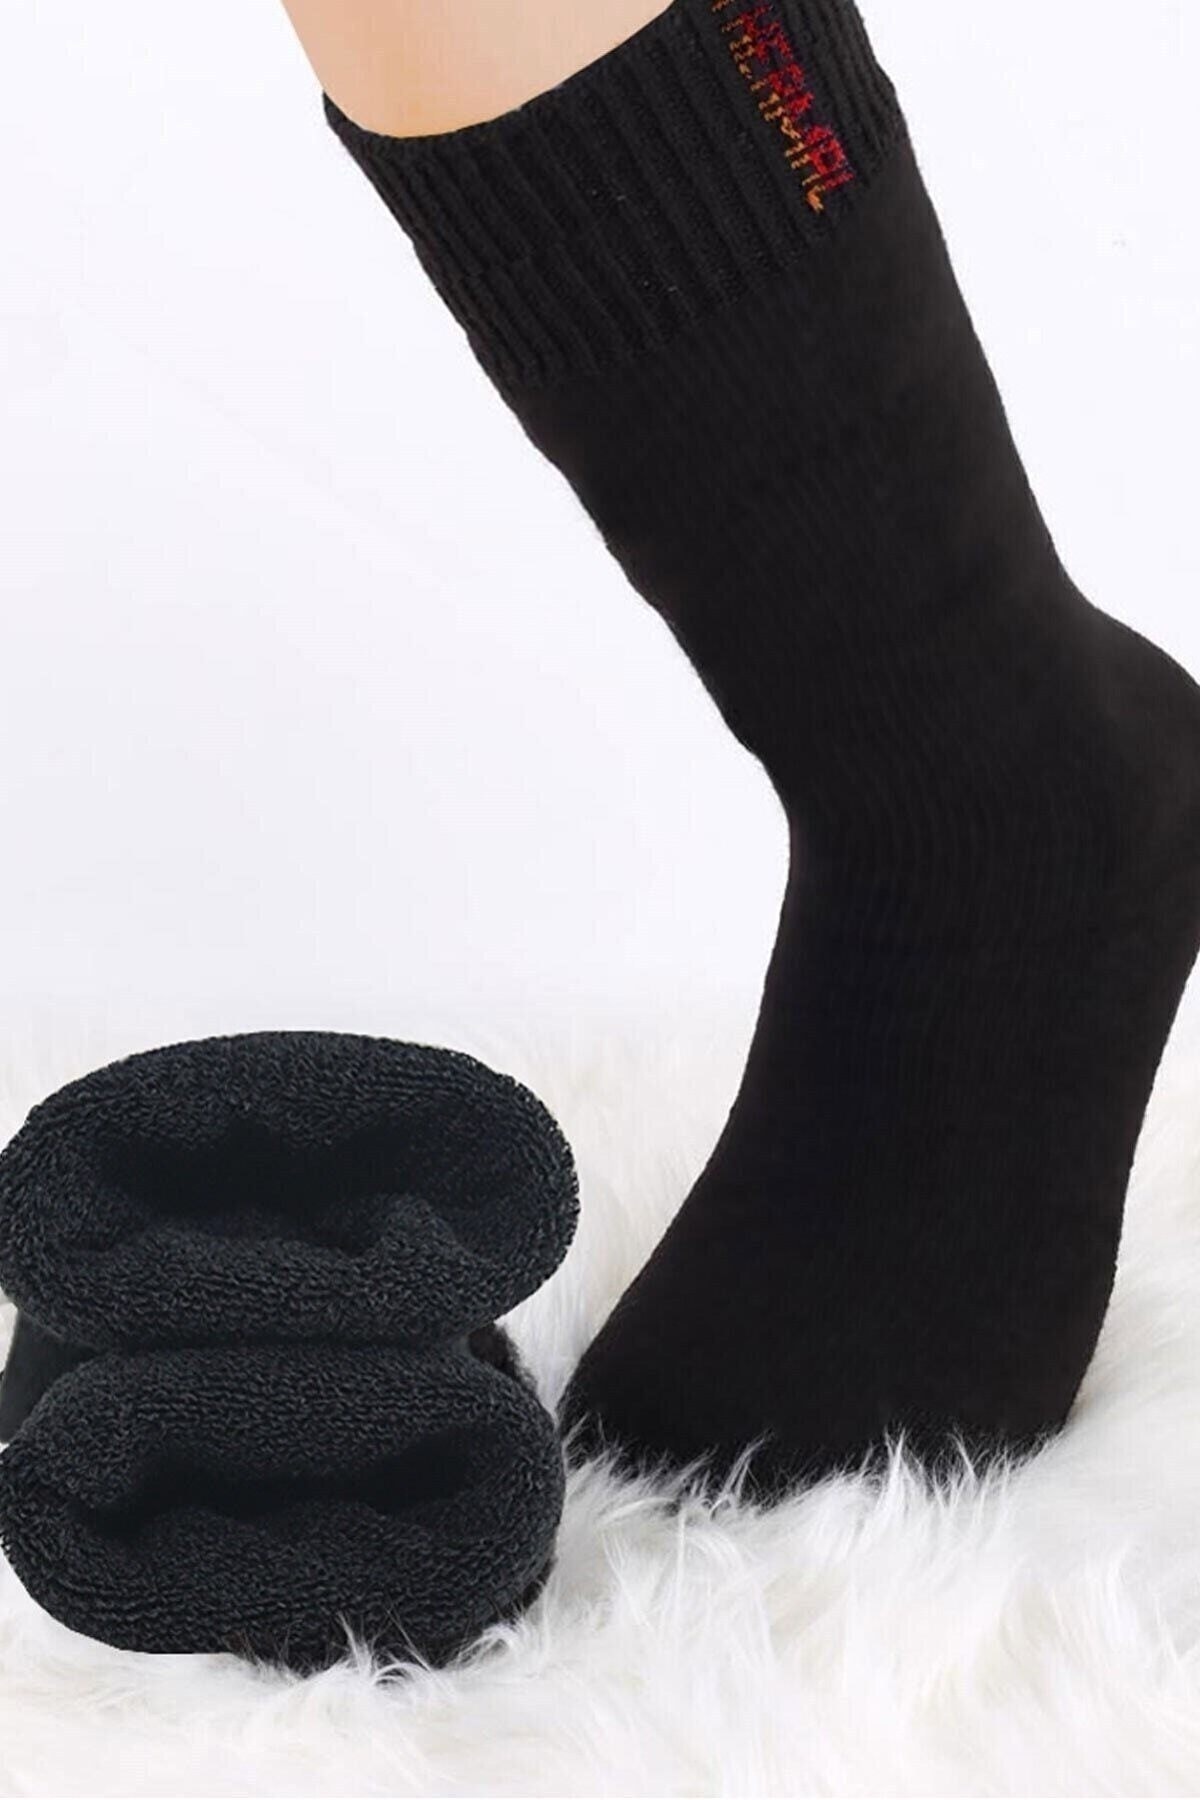 Meguca Socks Unisex Siyah 3 Çift Termal Havlu Kışlık Çorap NE8645